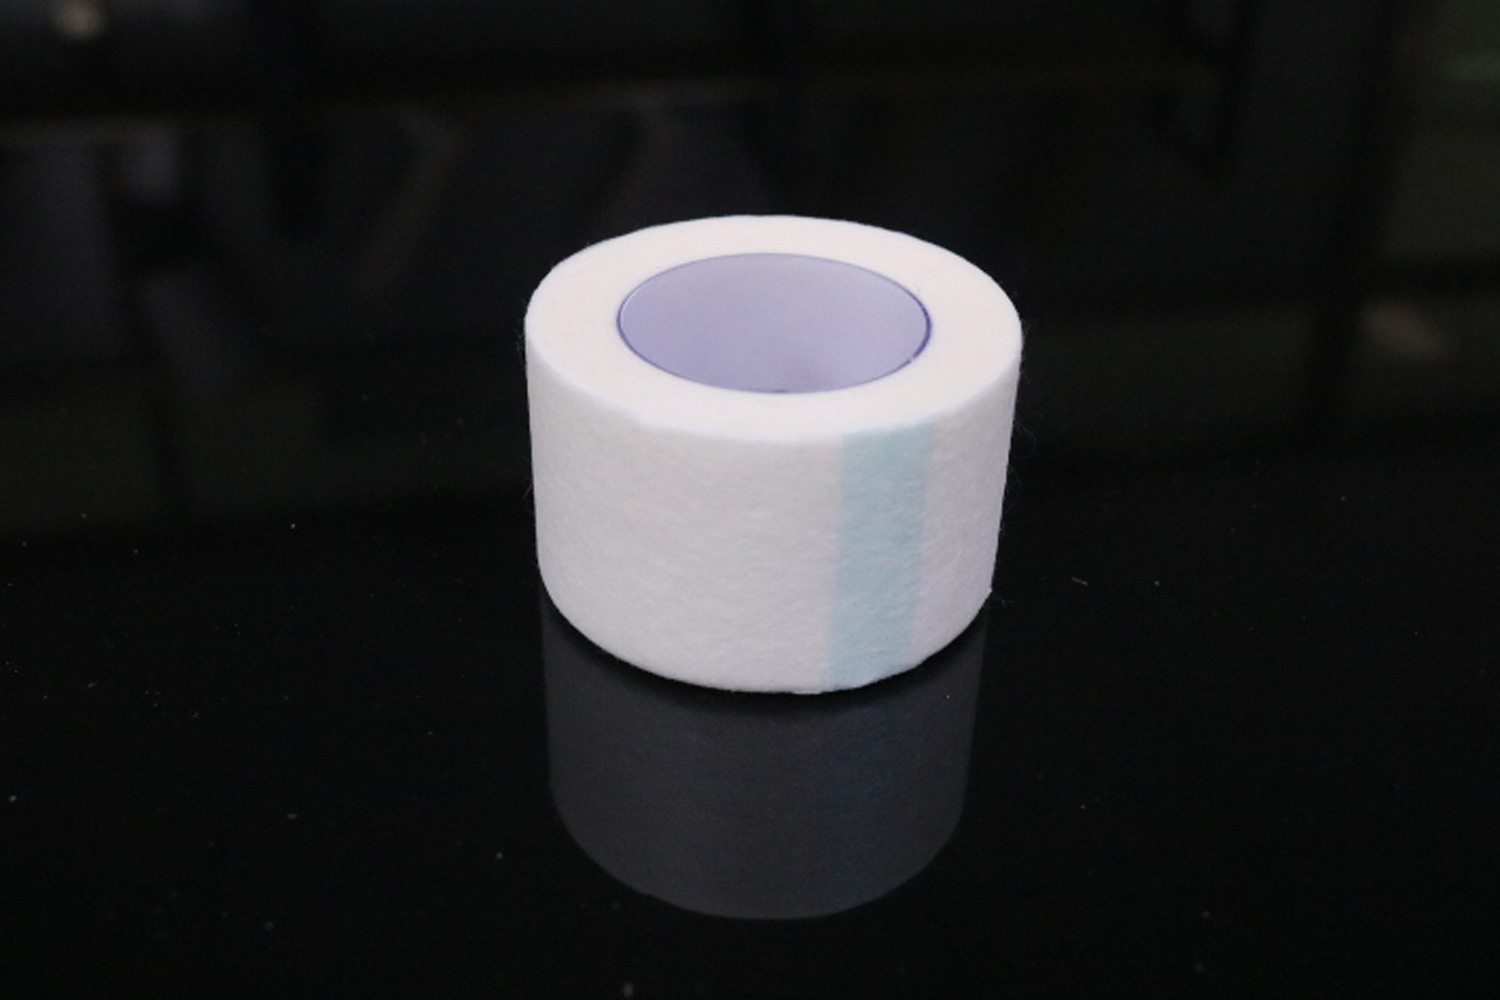 Paper Medical/Bandage Tape Wholesale Manufacturer/Supplier in